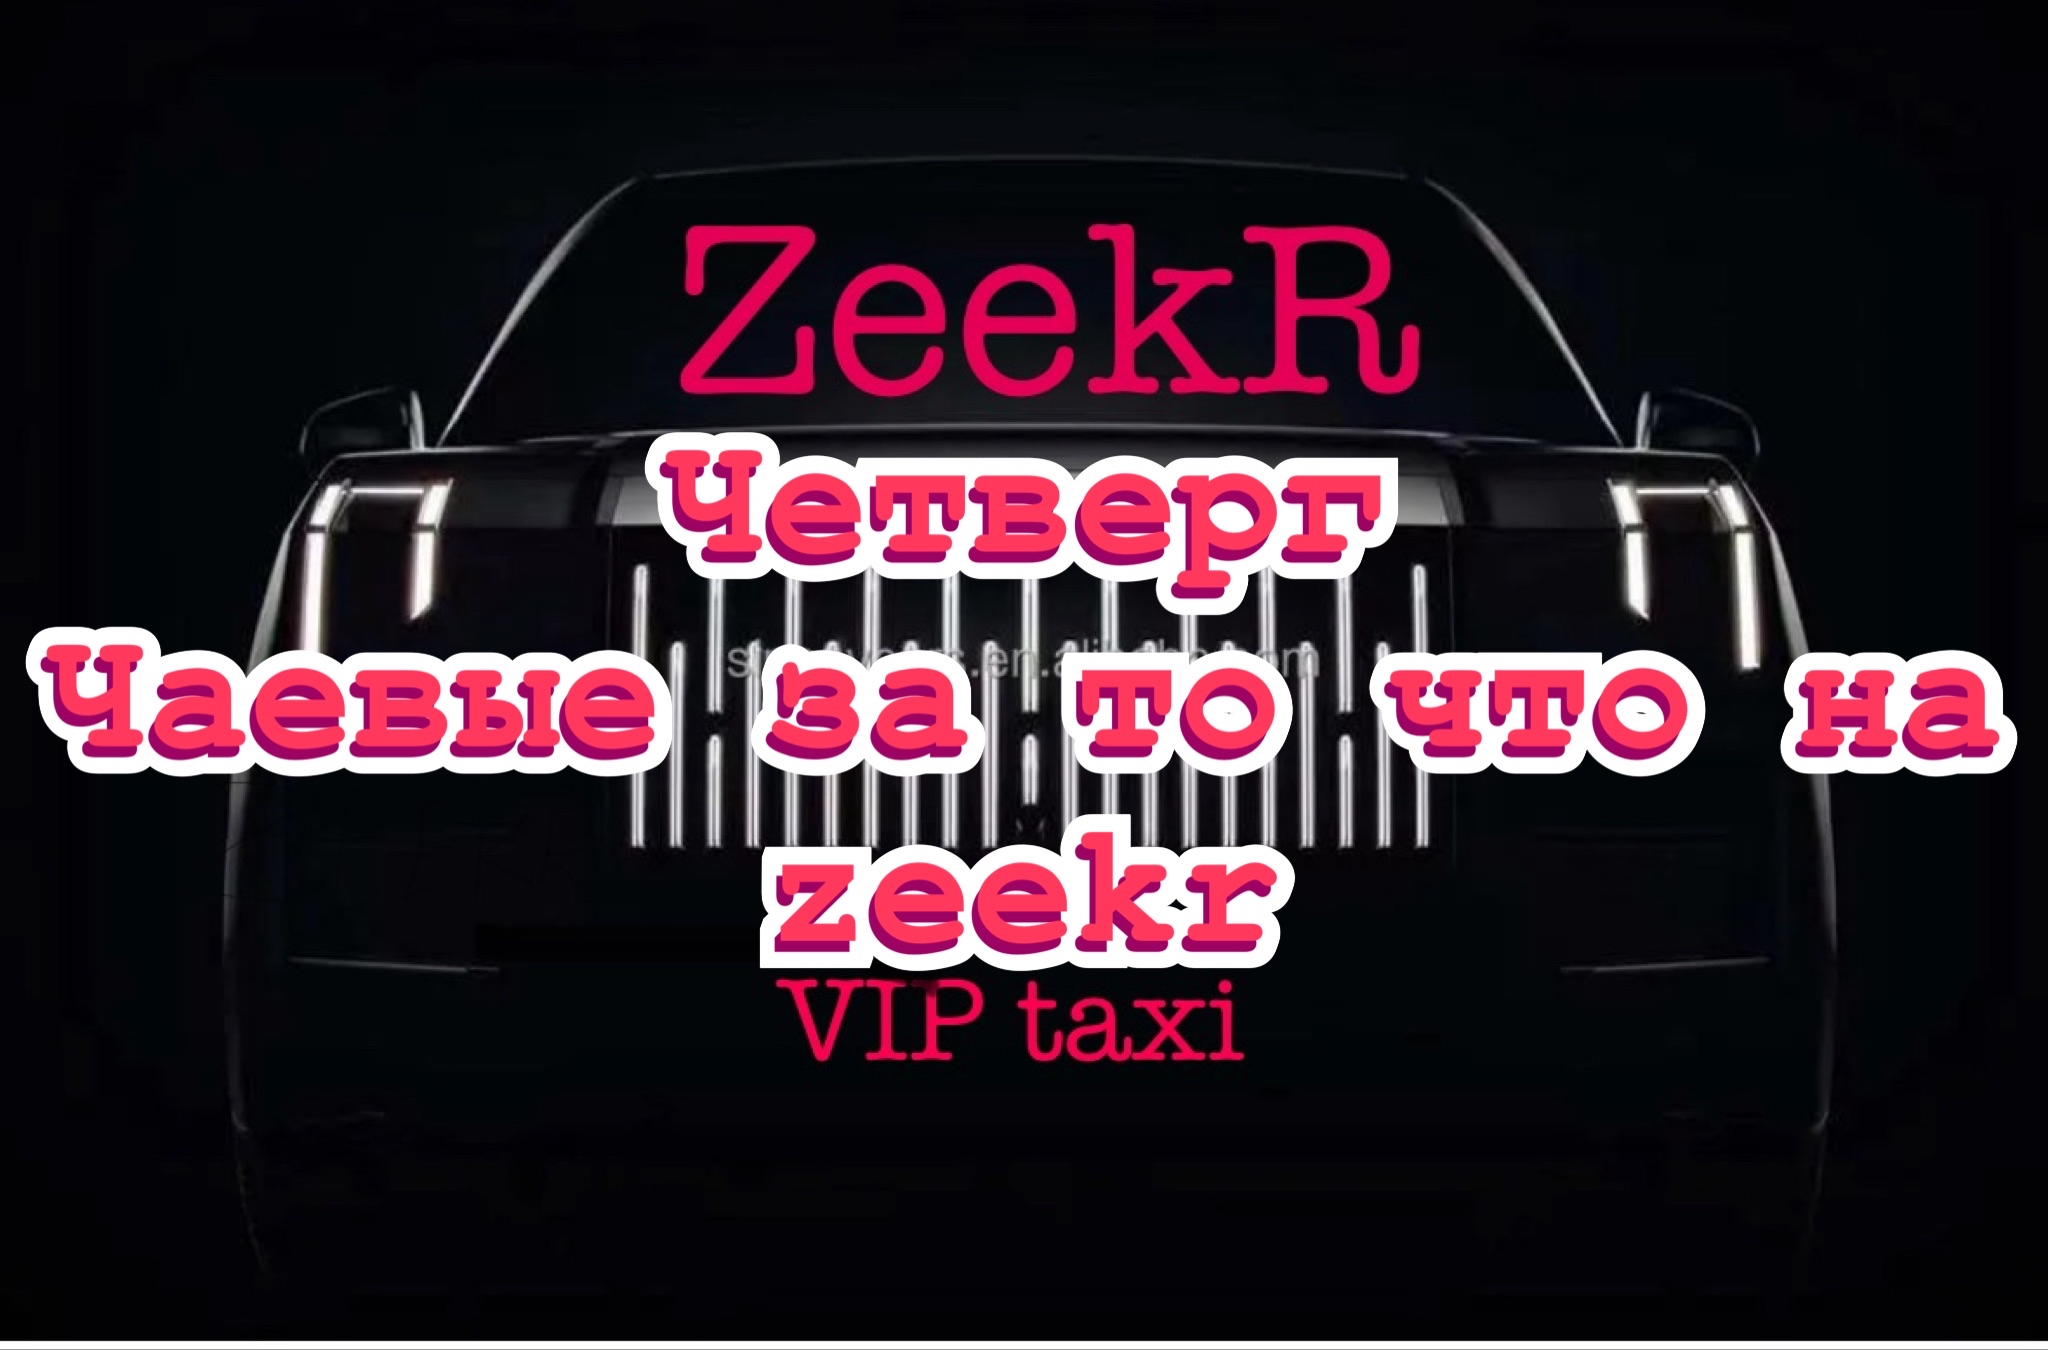 Идеальный Четверг vip такси /таксую на zeekr009/elite taxi/тариф элит/рабочая смена